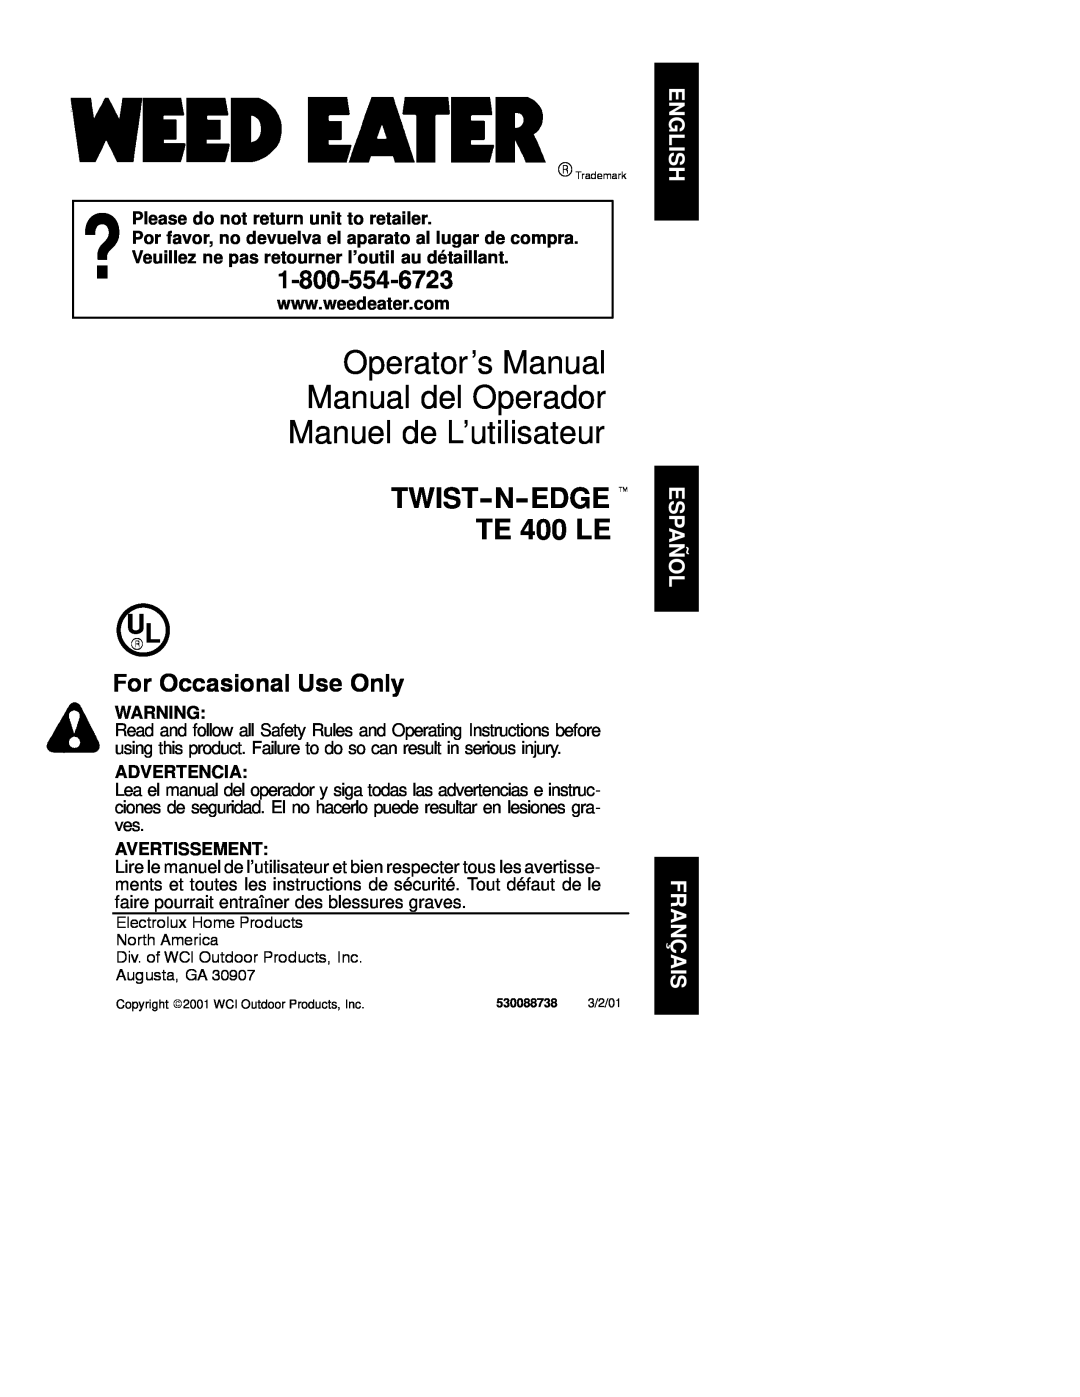 Poulan TE 400 LE operating instructions Operator’s Manual Manual del Operador Manuel de L’utilisateur, Advertencia 